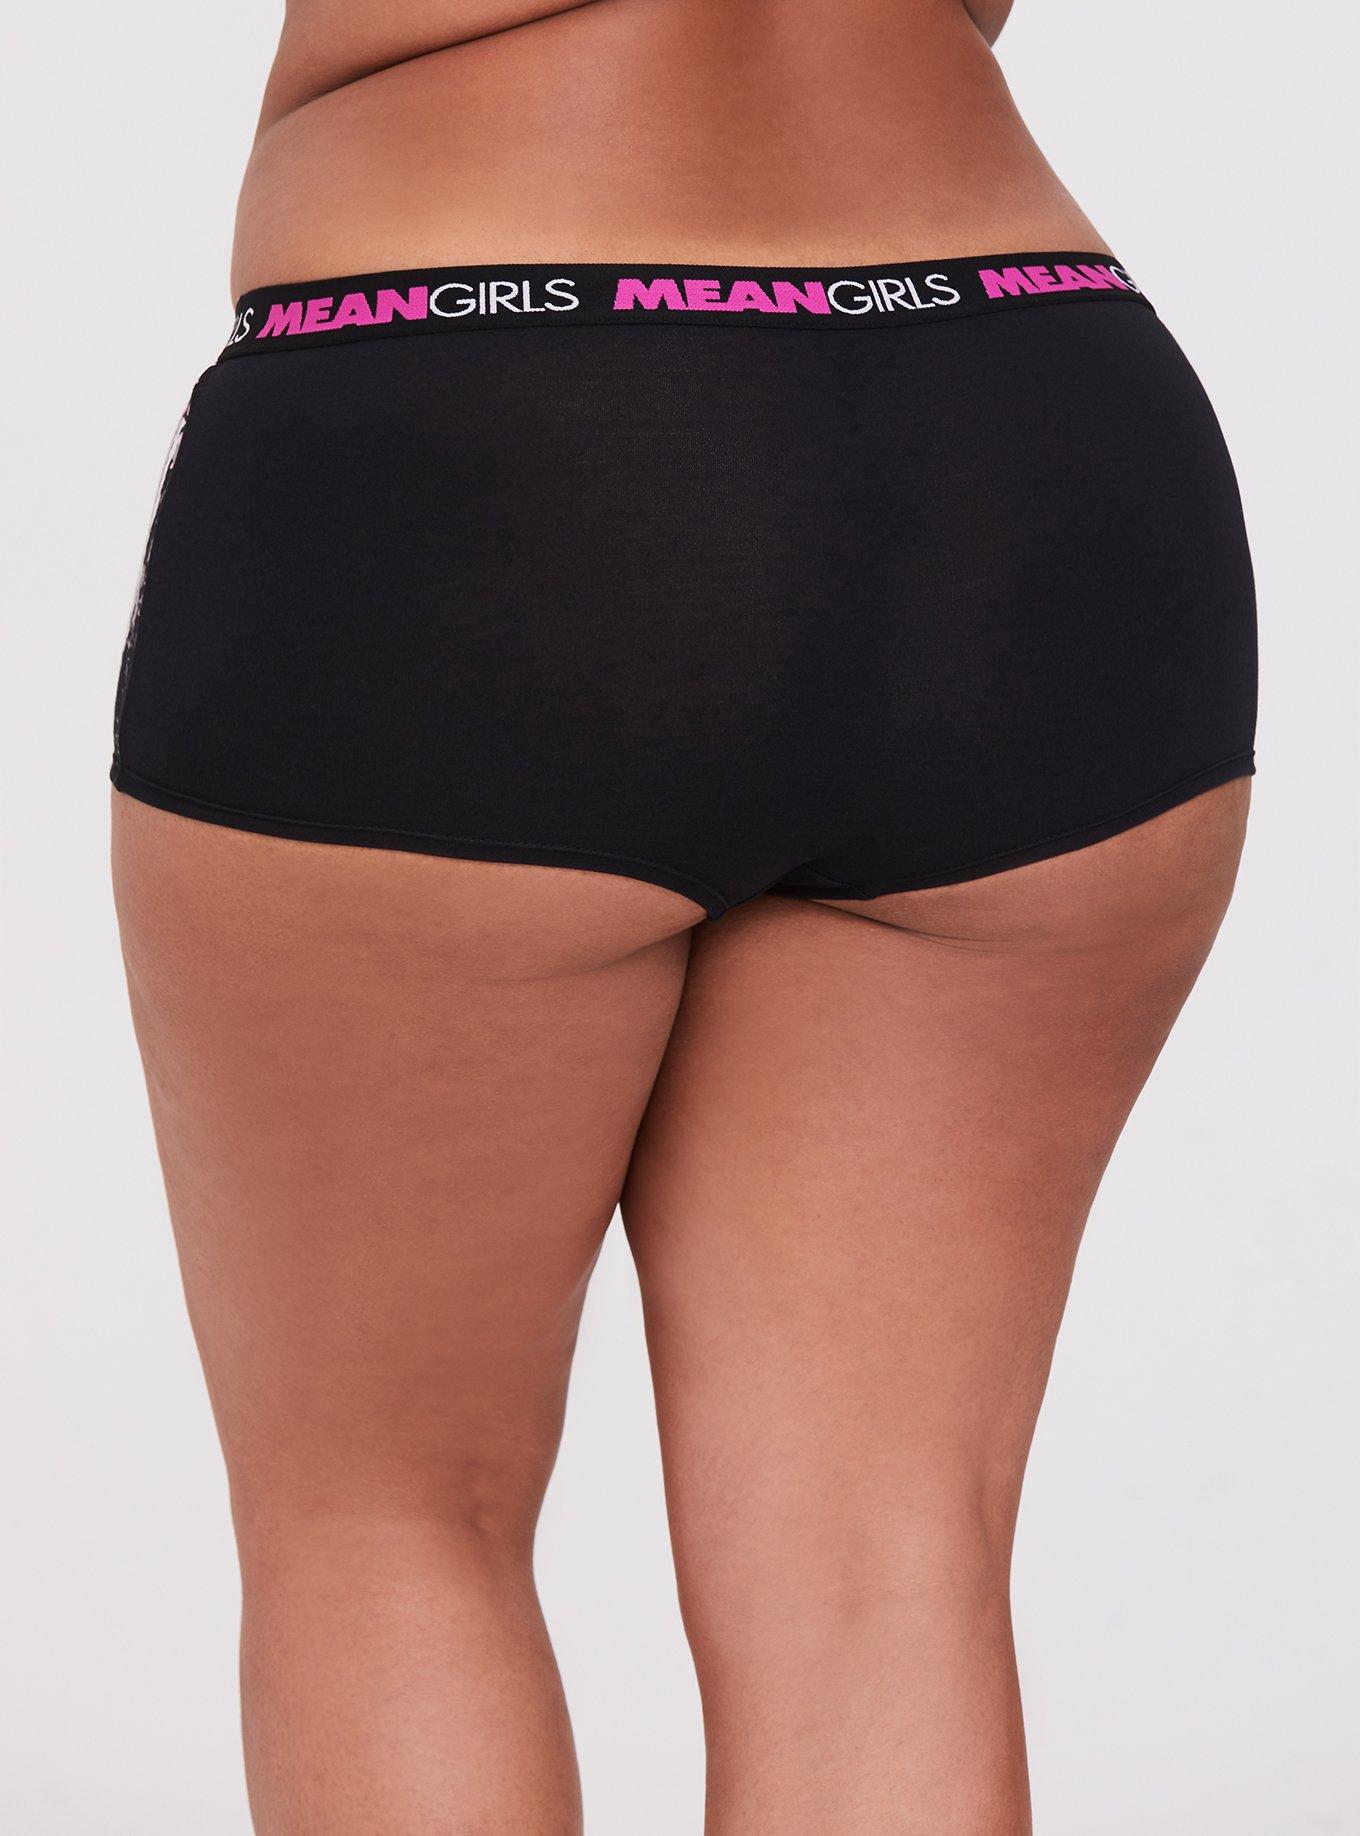 Mean Girls Knickers String Style Panties Film Ladies Underwear UK Sizes 6  to 20